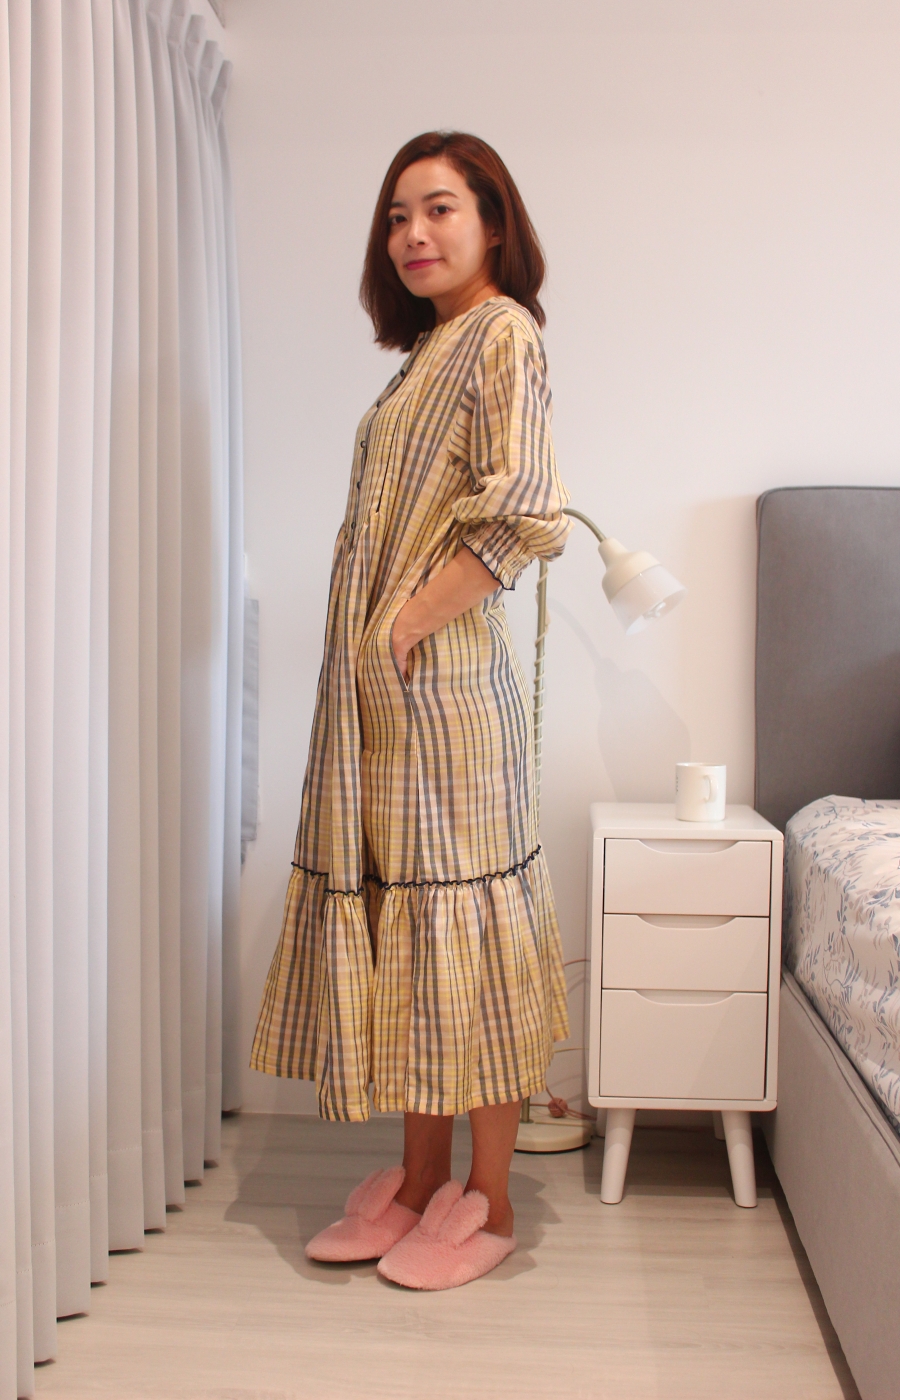 Kanaii Boom 公主風格紋純棉長洋裝拼接的裙襬我覺得很美